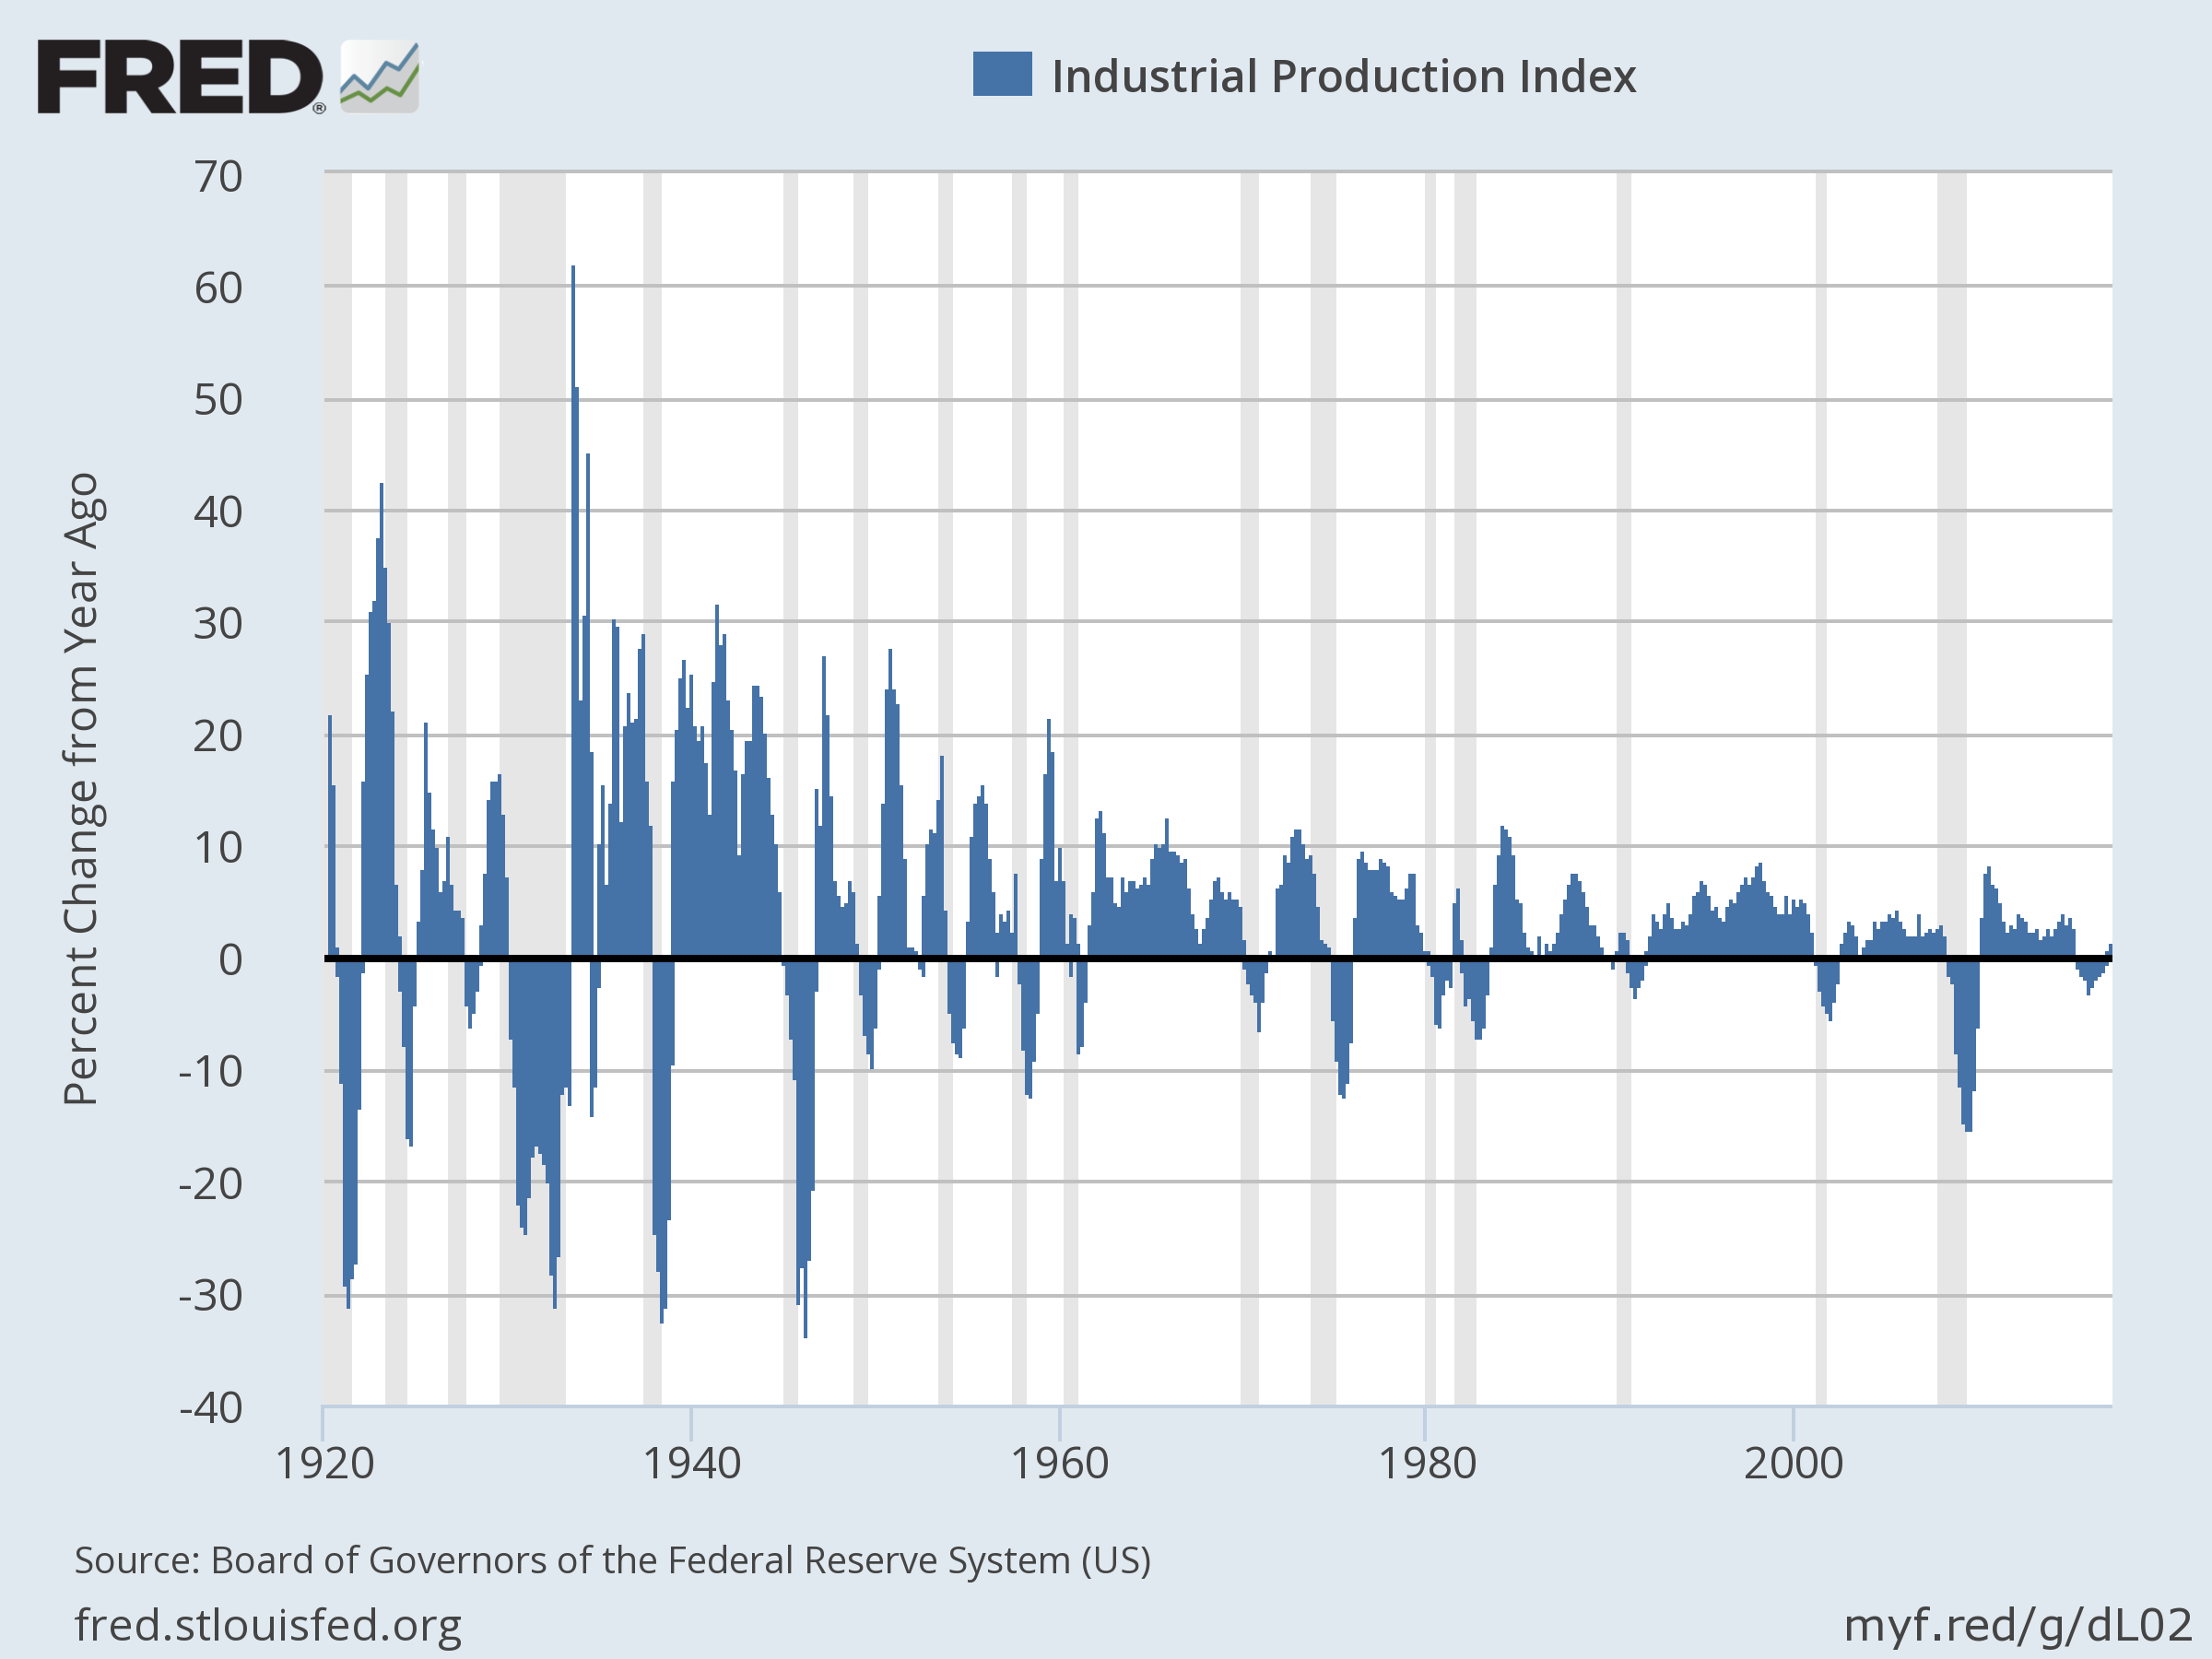 Product index